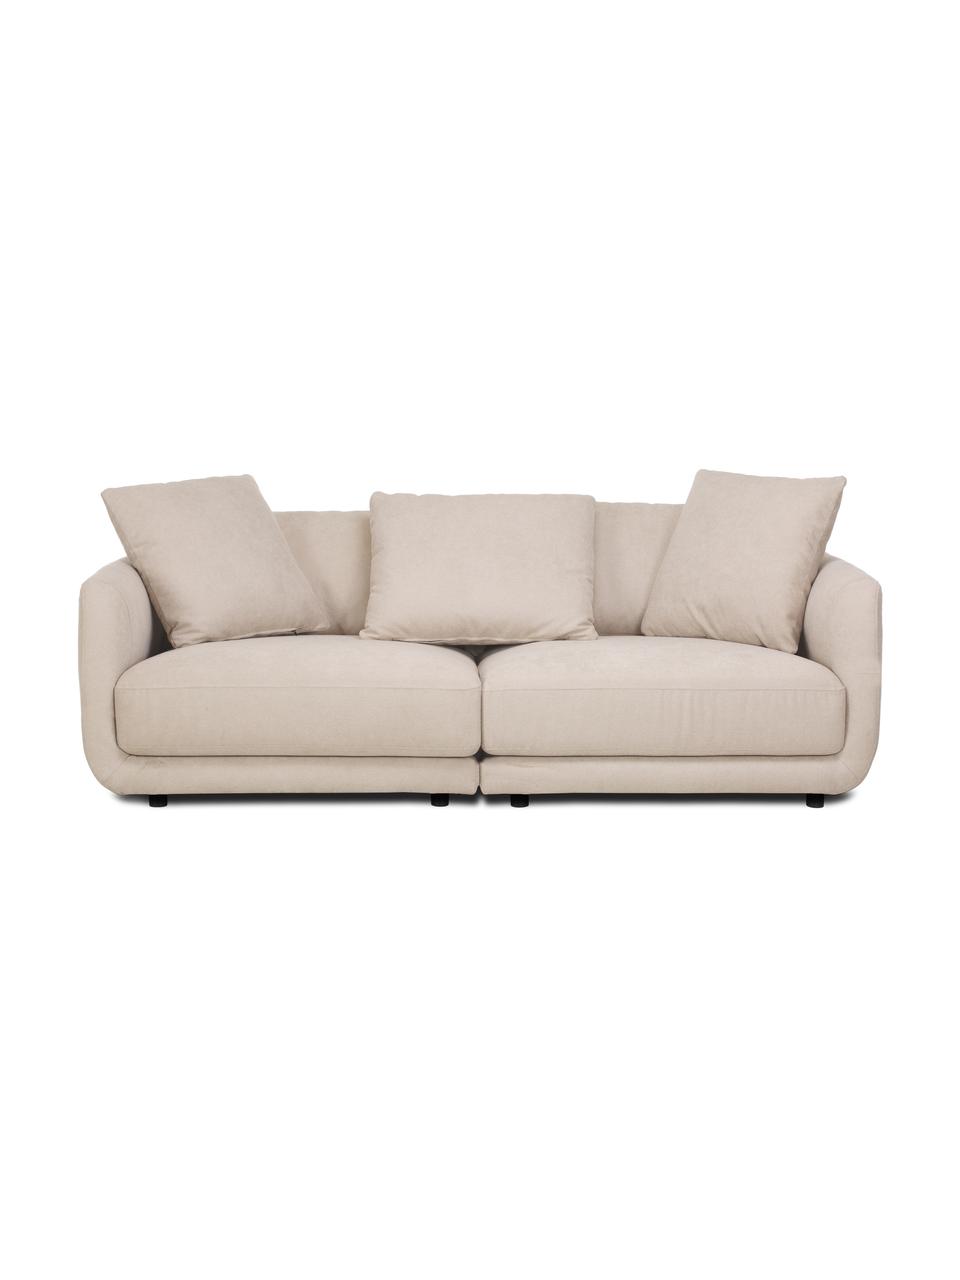 Sofa modułowa Jasmin (3-osobowa), Tapicerka: 85% poliester, 15% nylon , Nogi: tworzywo sztuczne, Beżowa tkanina, S 208 x W 84 cm